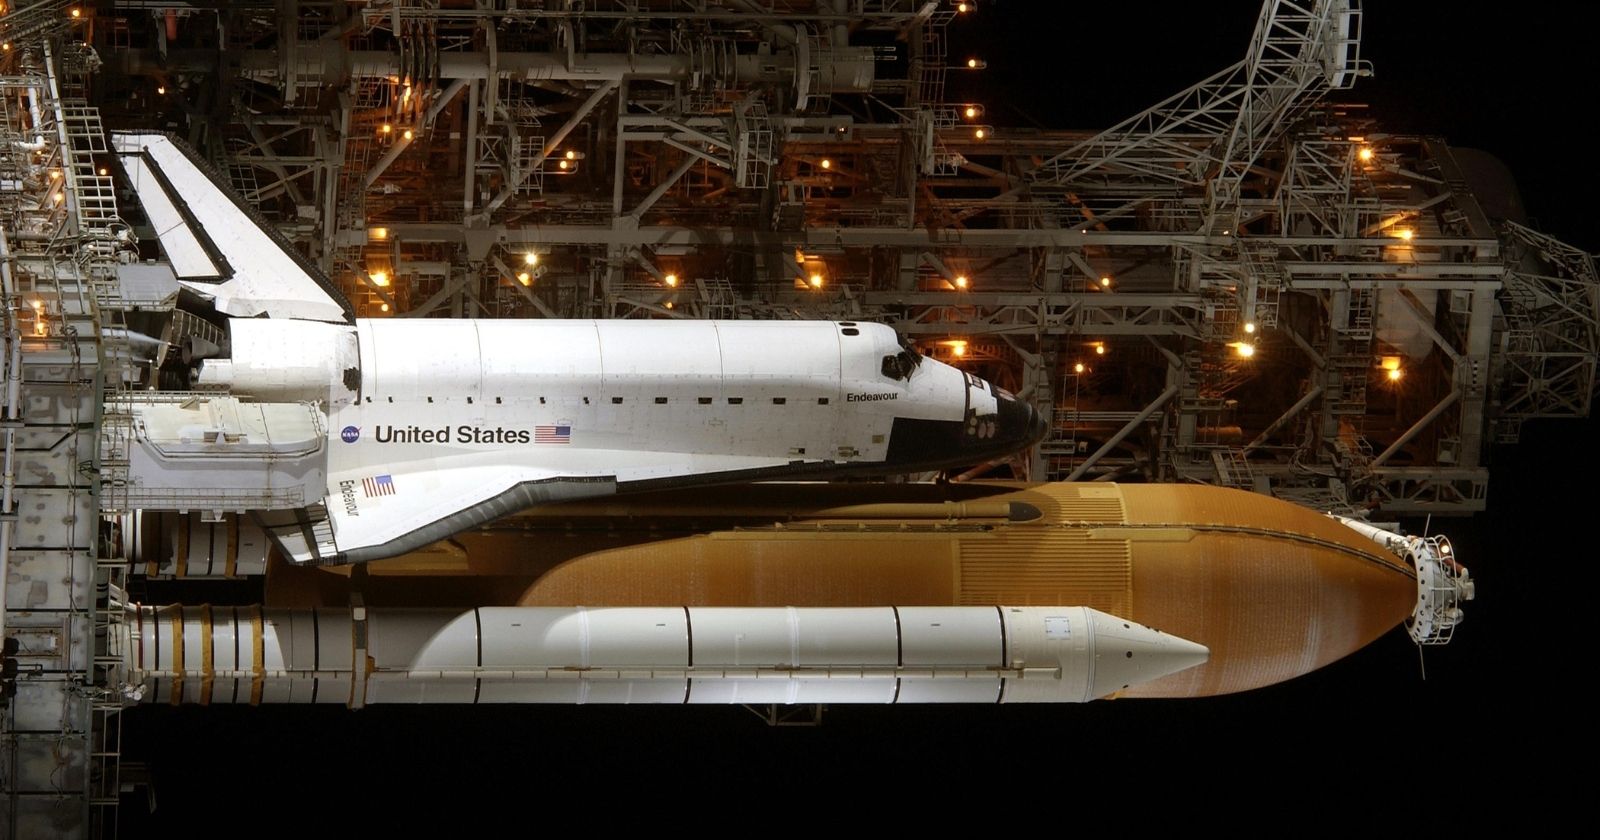 Uzay mekiği Endeavour son görevine çıktı! Nasıl izlenir?